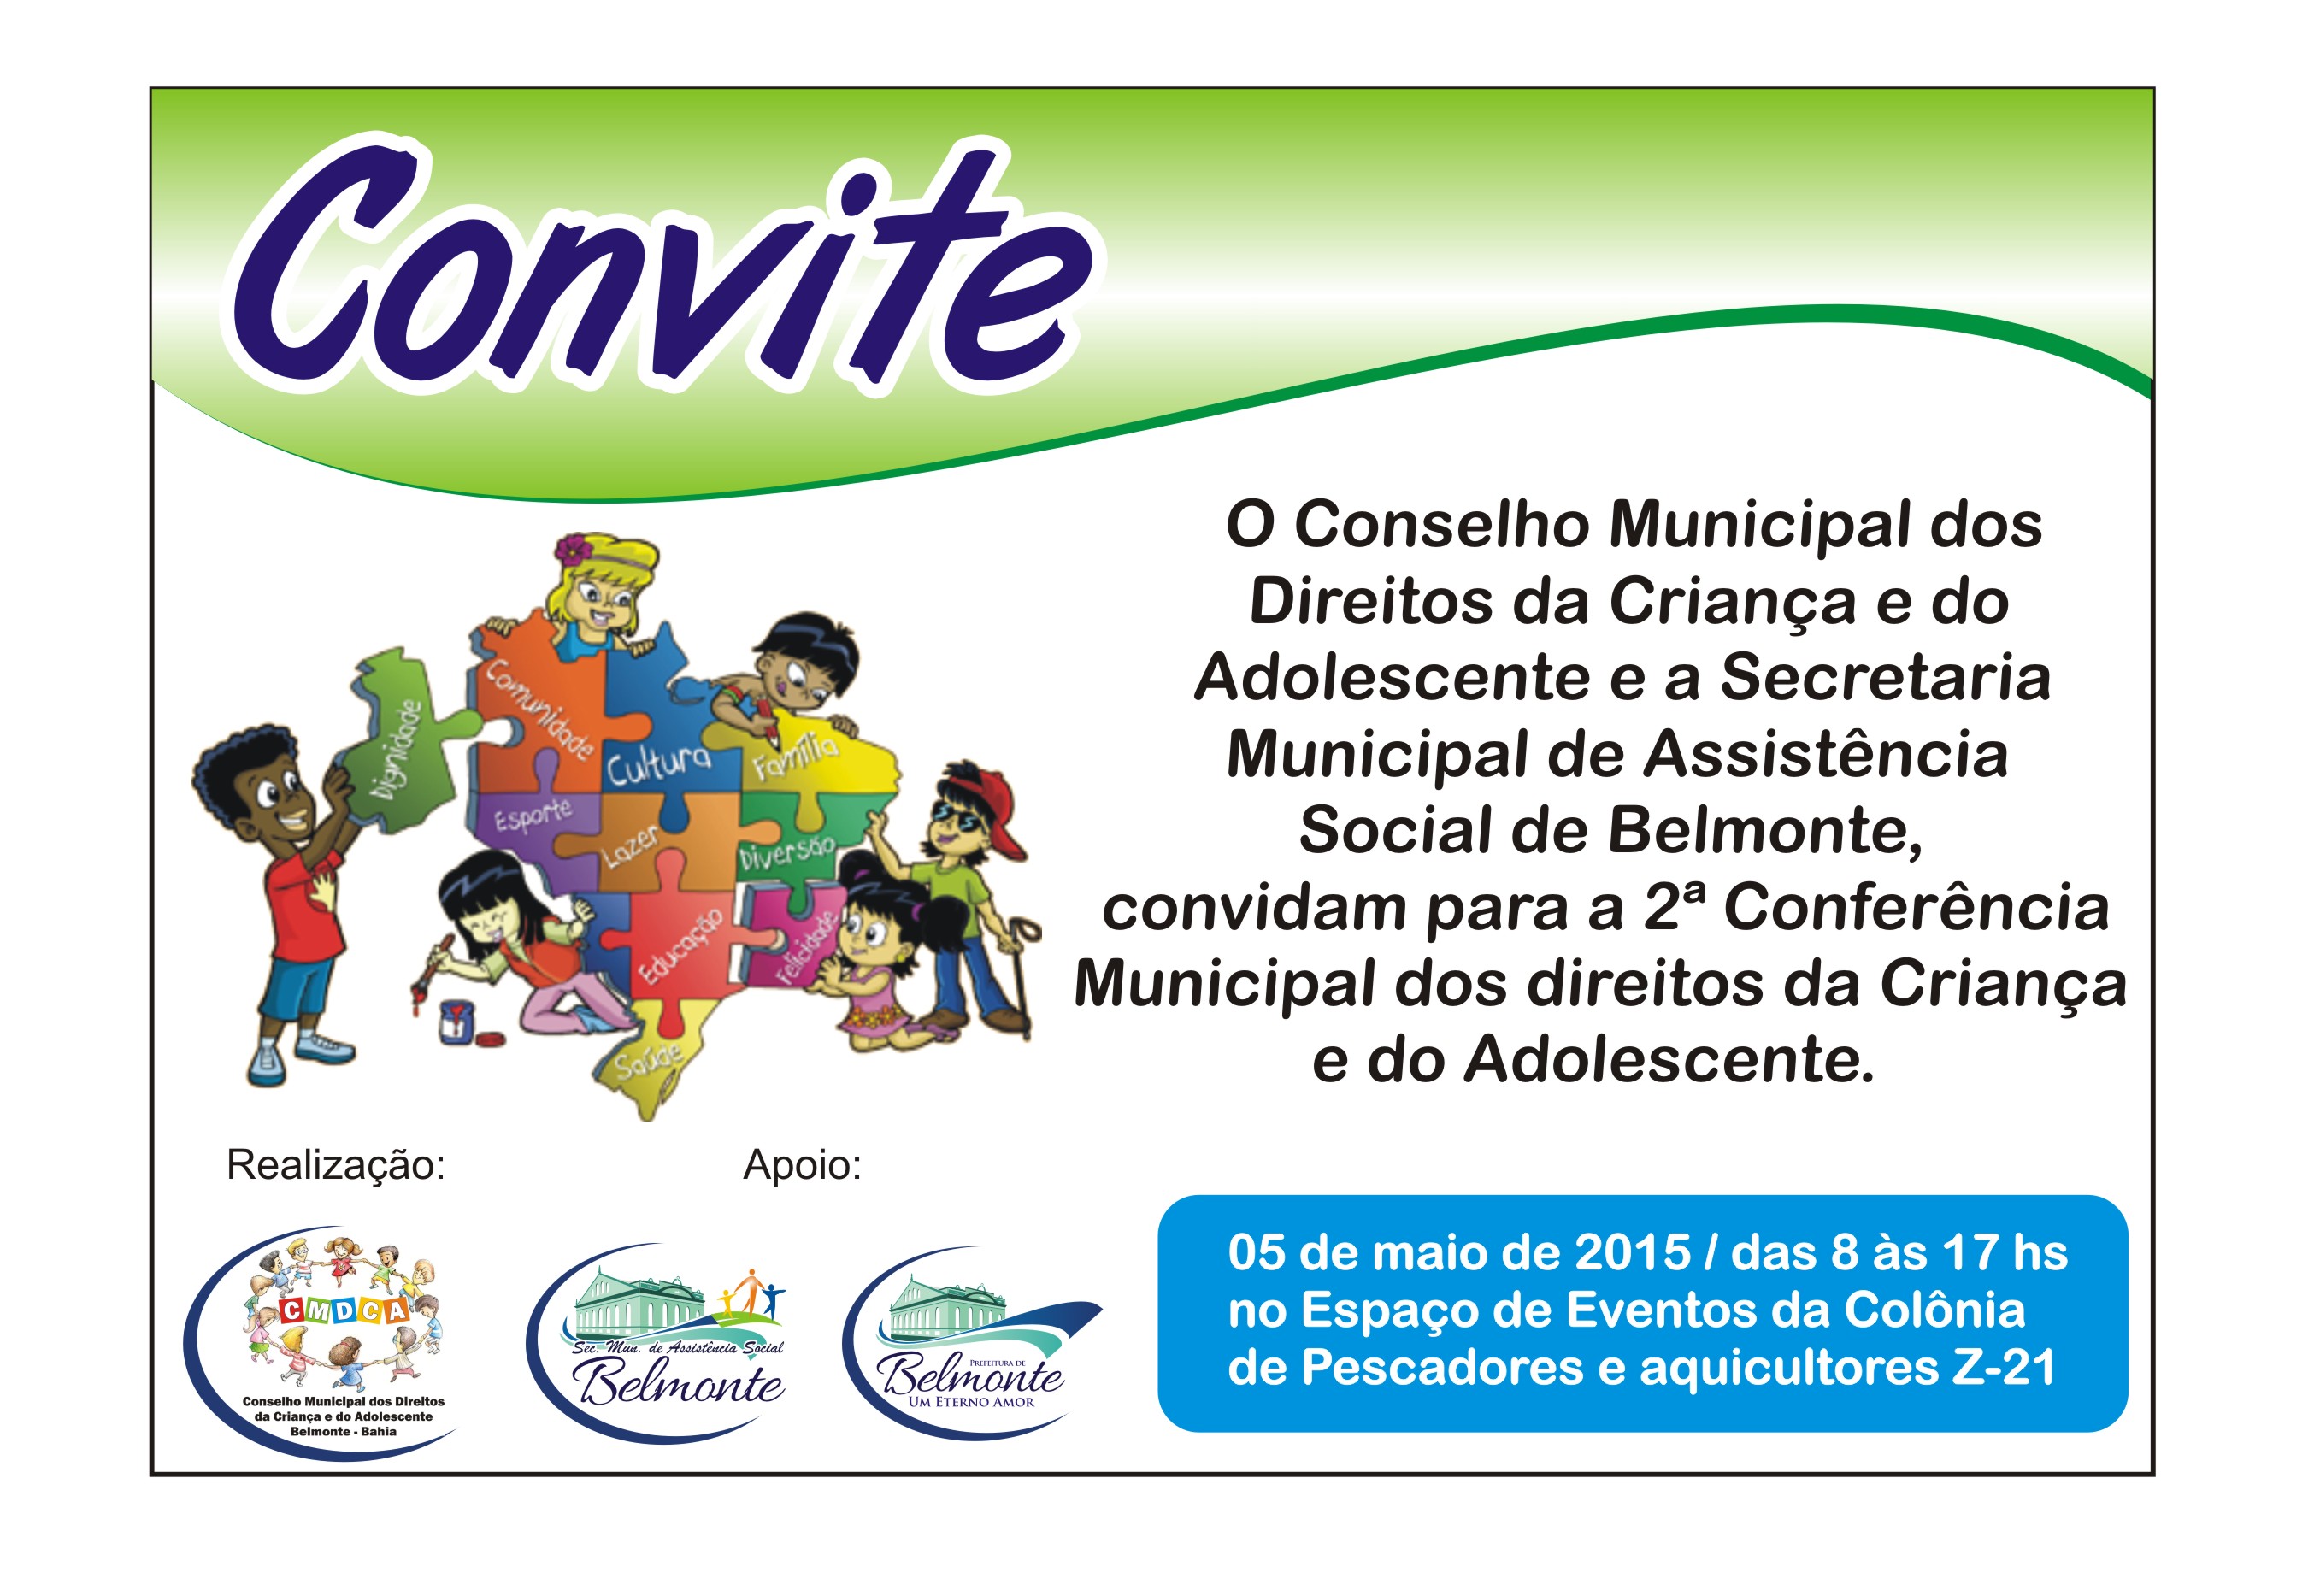 CMCDA divulga nova data para a 2ª Conferencia Municipal dos Direitos da Criança e do Adolescente.